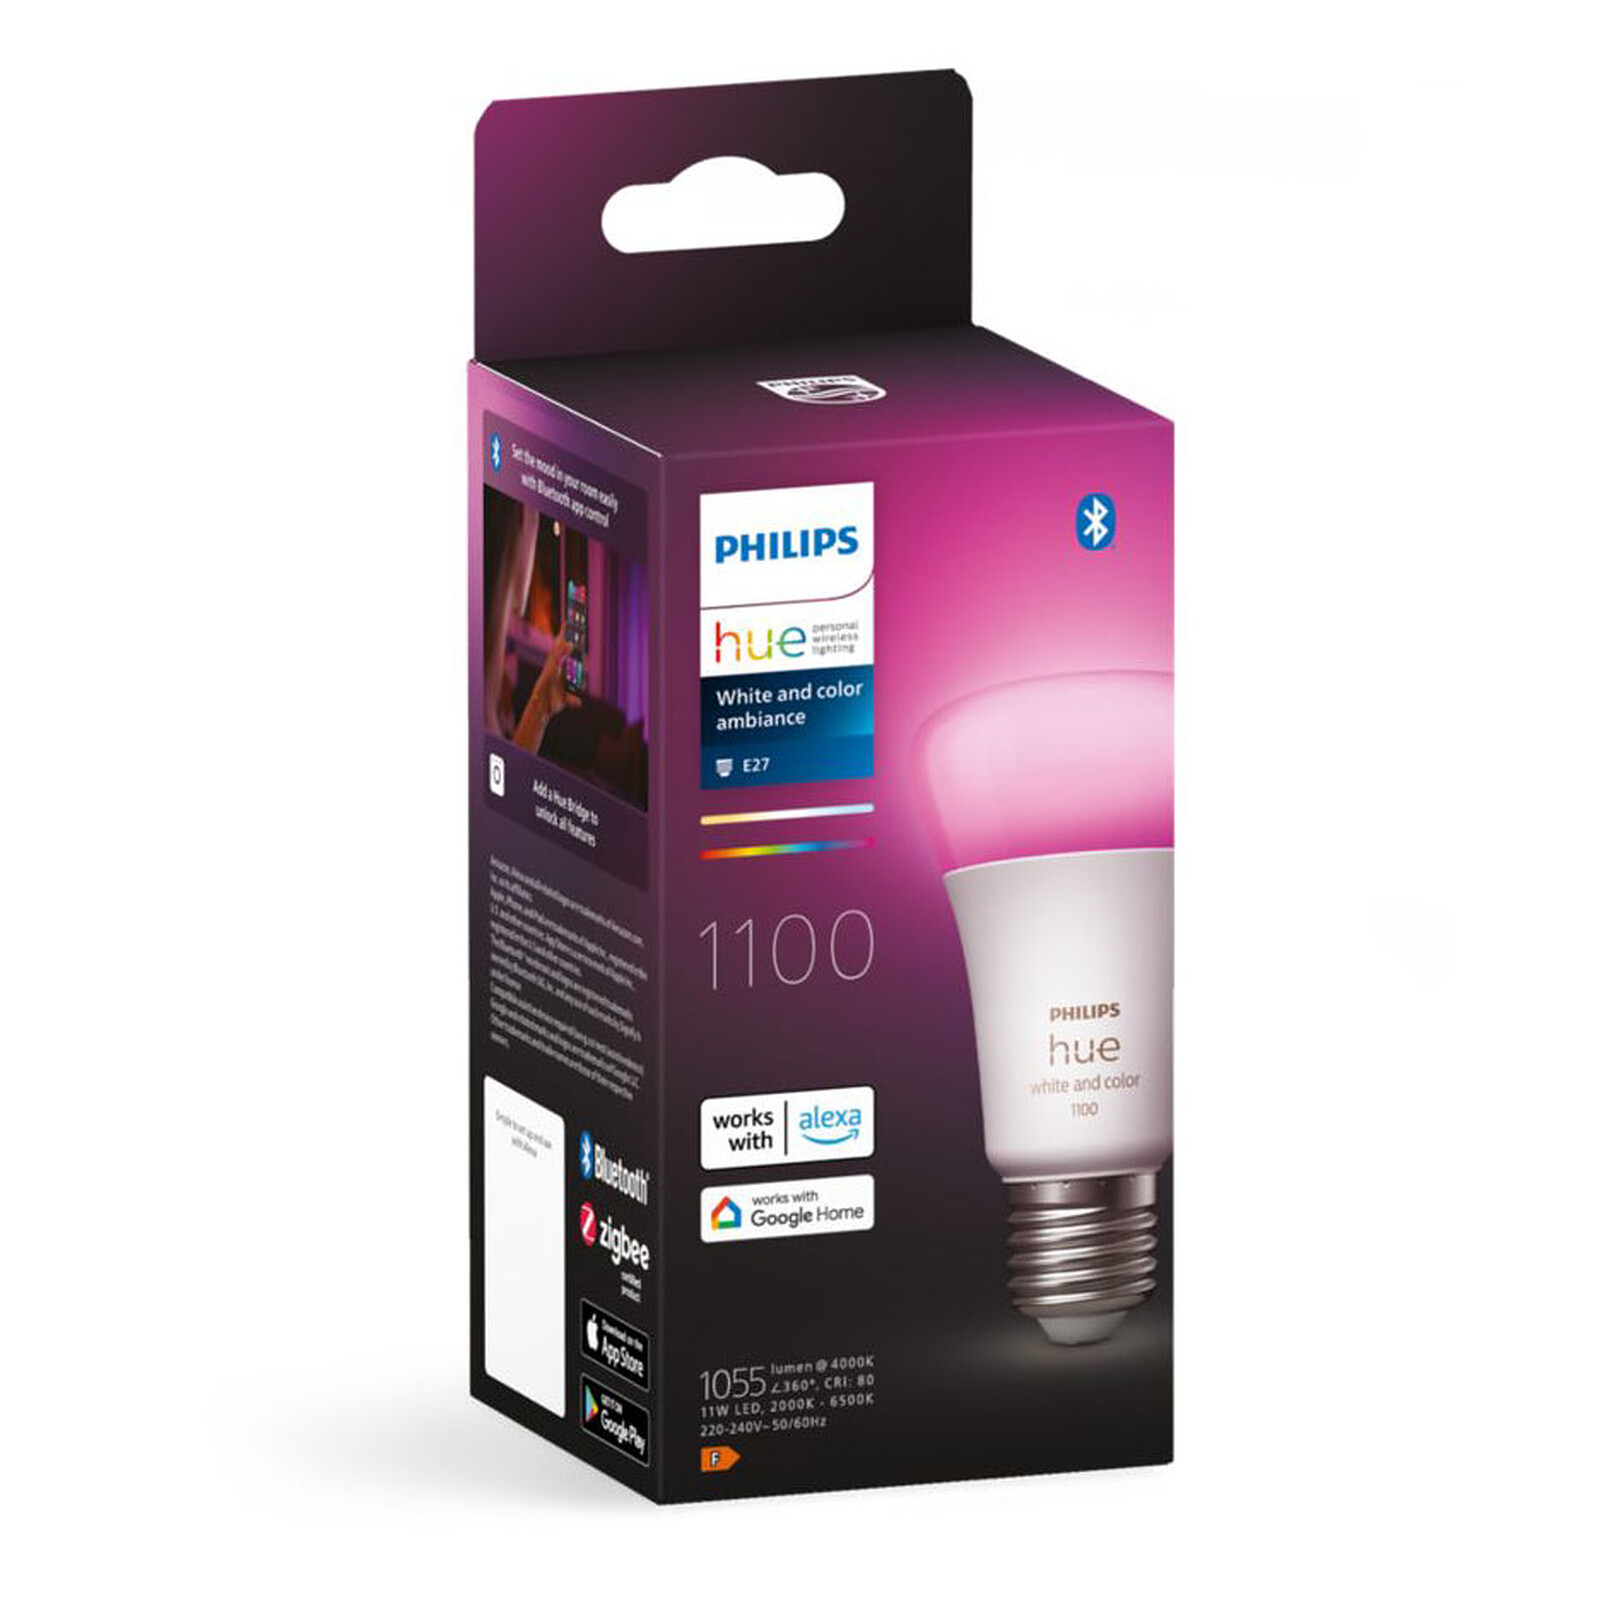 Philips Hue White and Color E27 A60 11 W Bluetooth x 1 - Ampoule connectée  - Garantie 3 ans LDLC